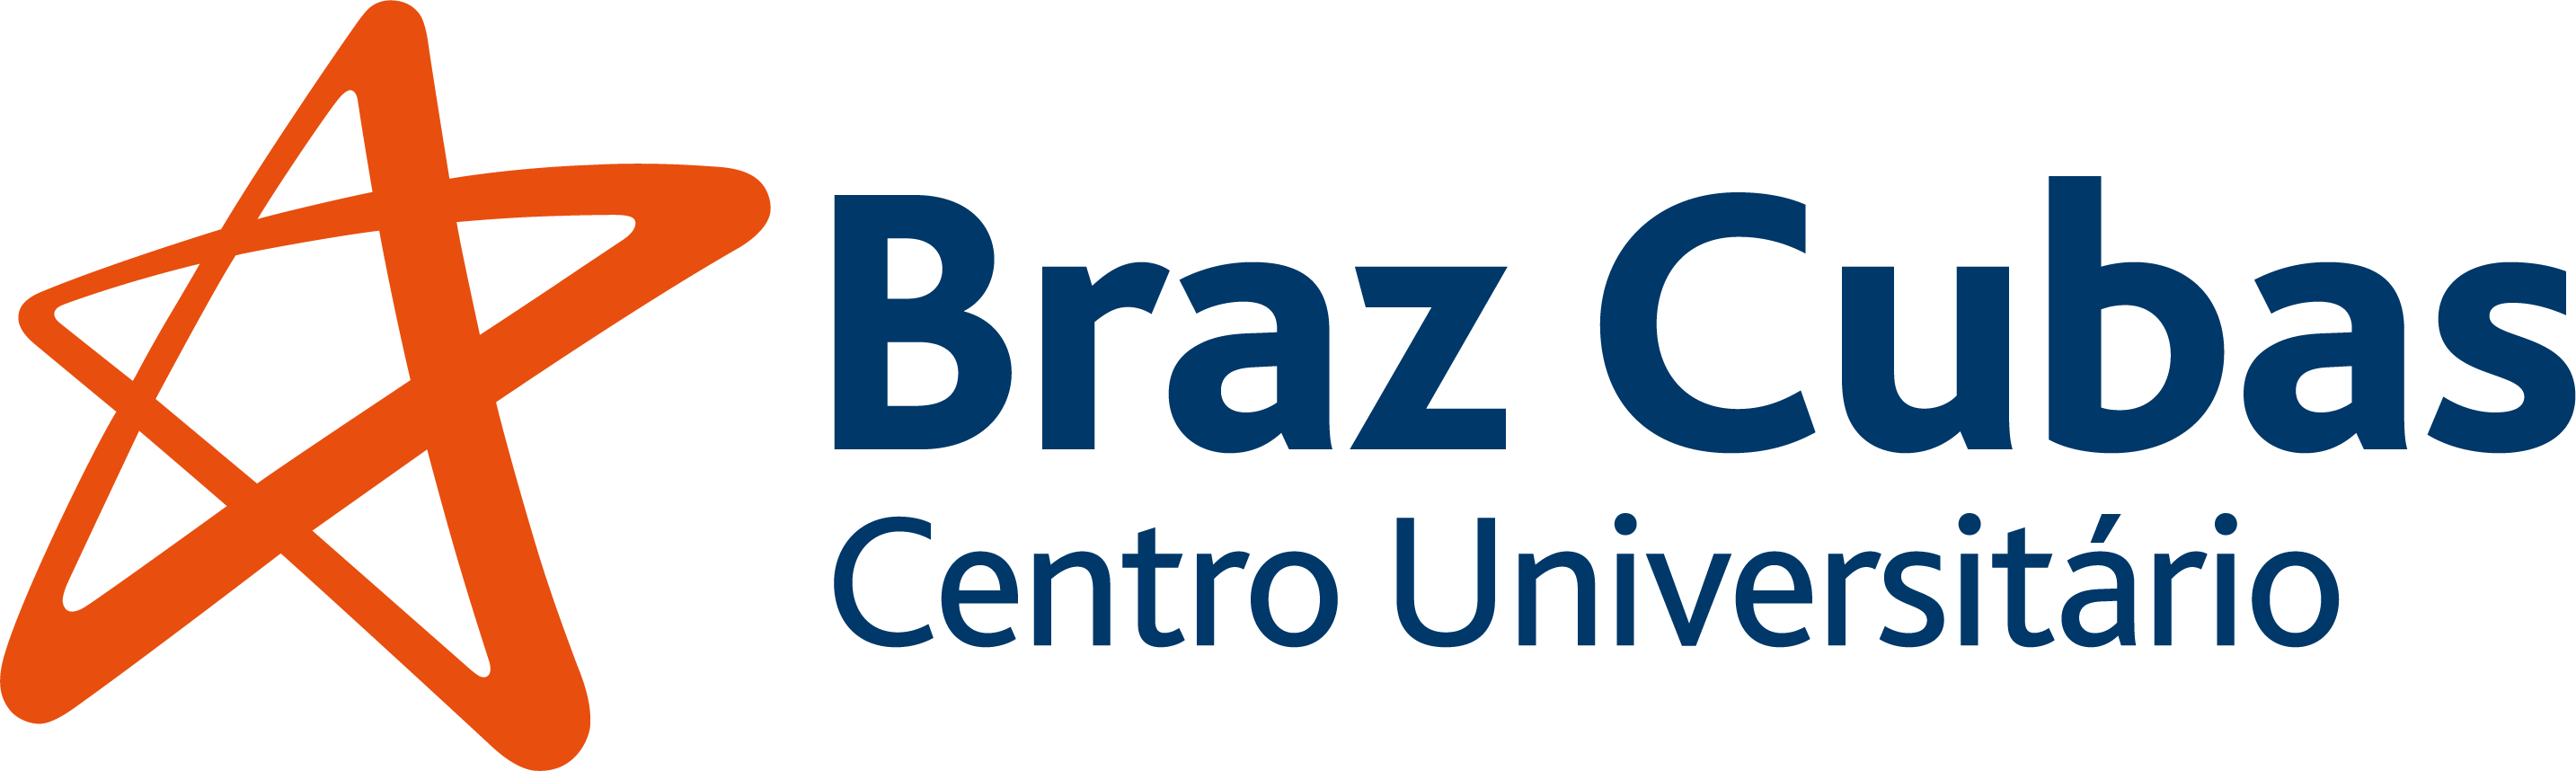 Braz Cubas Centro Universitário